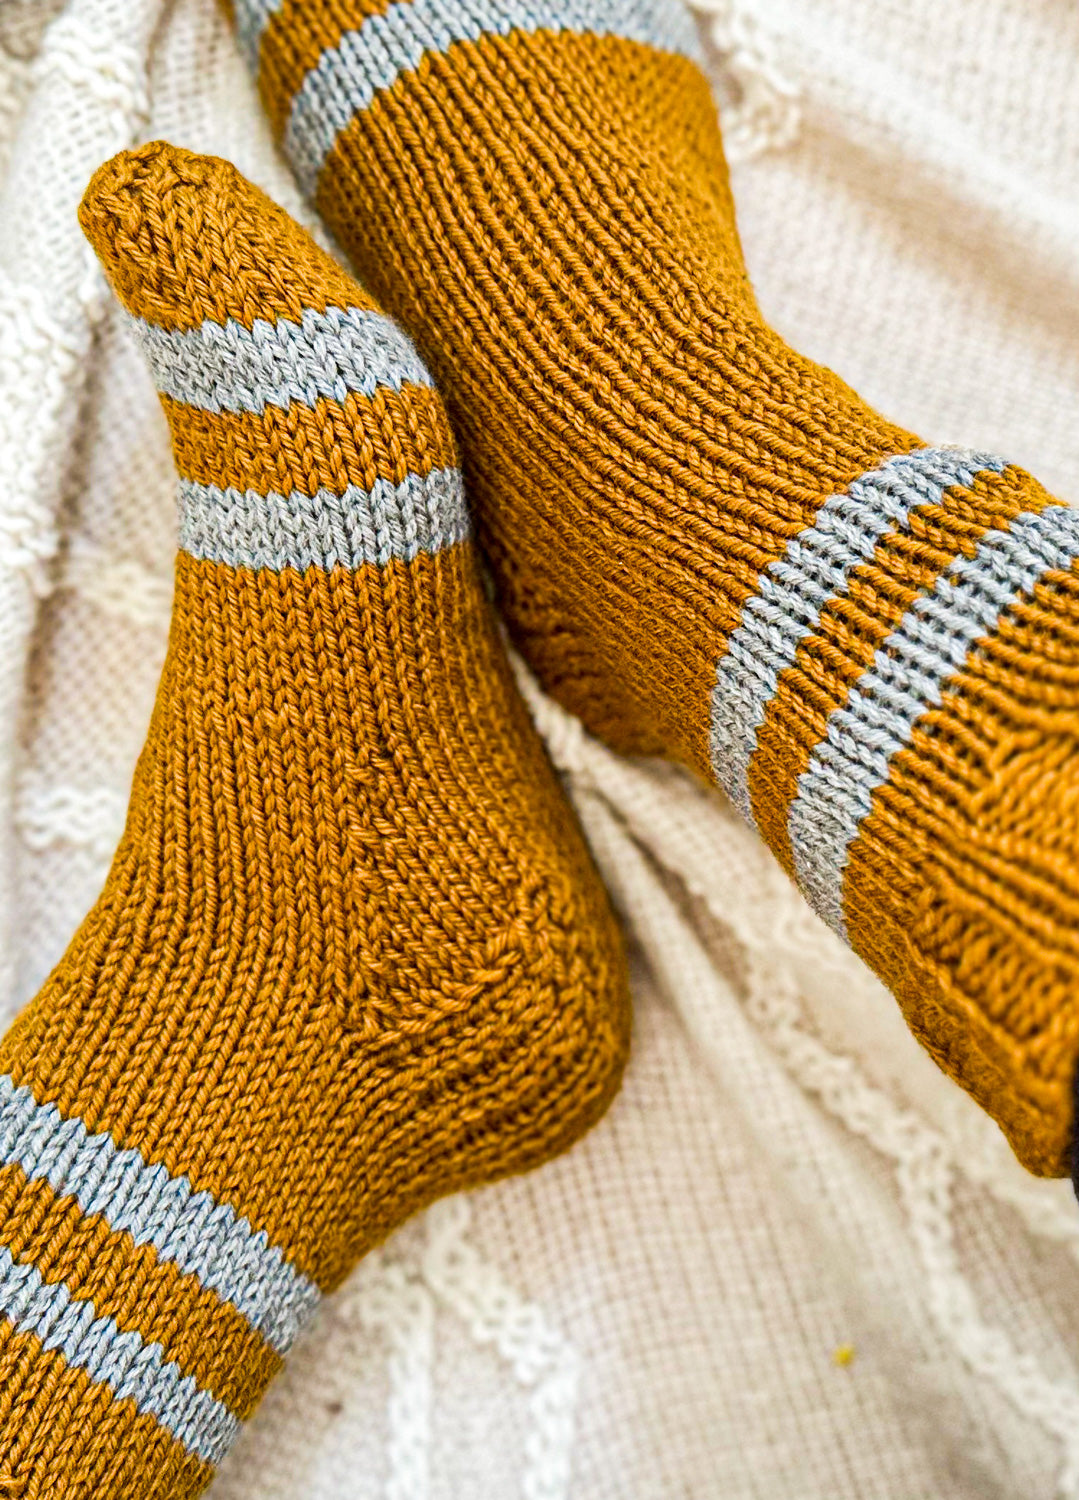 Cozy Home Socks Free Pattern x @julieannknitter